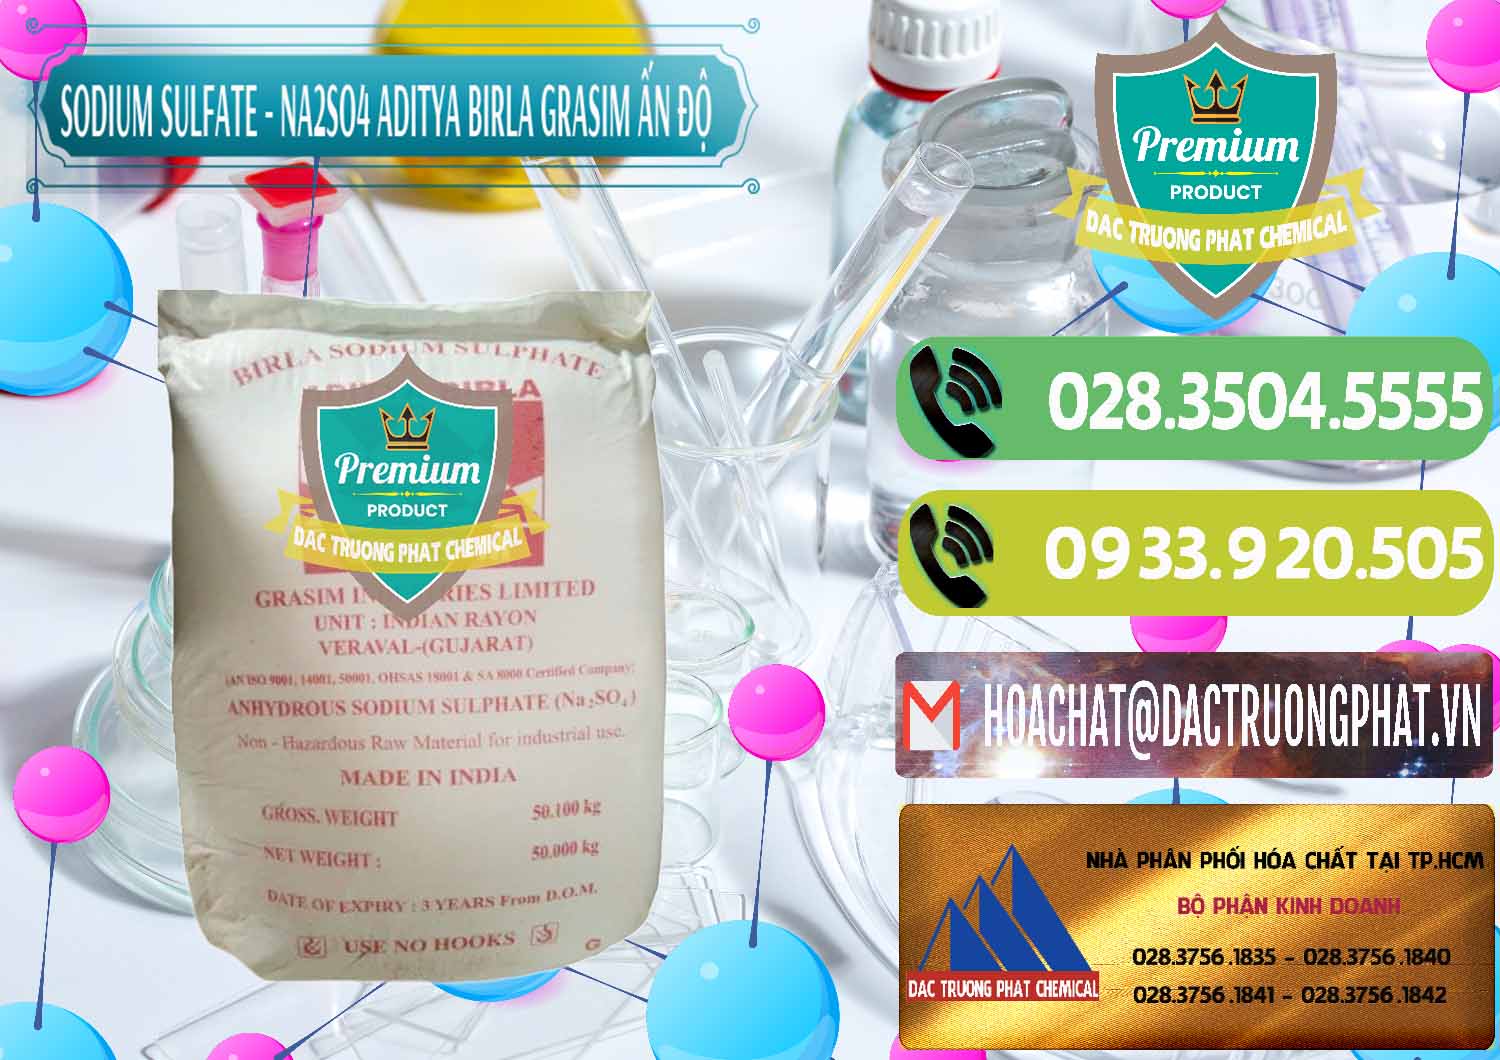 Đơn vị chuyên bán - cung cấp Sodium Sulphate - Muối Sunfat Na2SO4 Grasim Ấn Độ India - 0356 - Nhà phân phối và kinh doanh hóa chất tại TP.HCM - hoachatmientay.vn